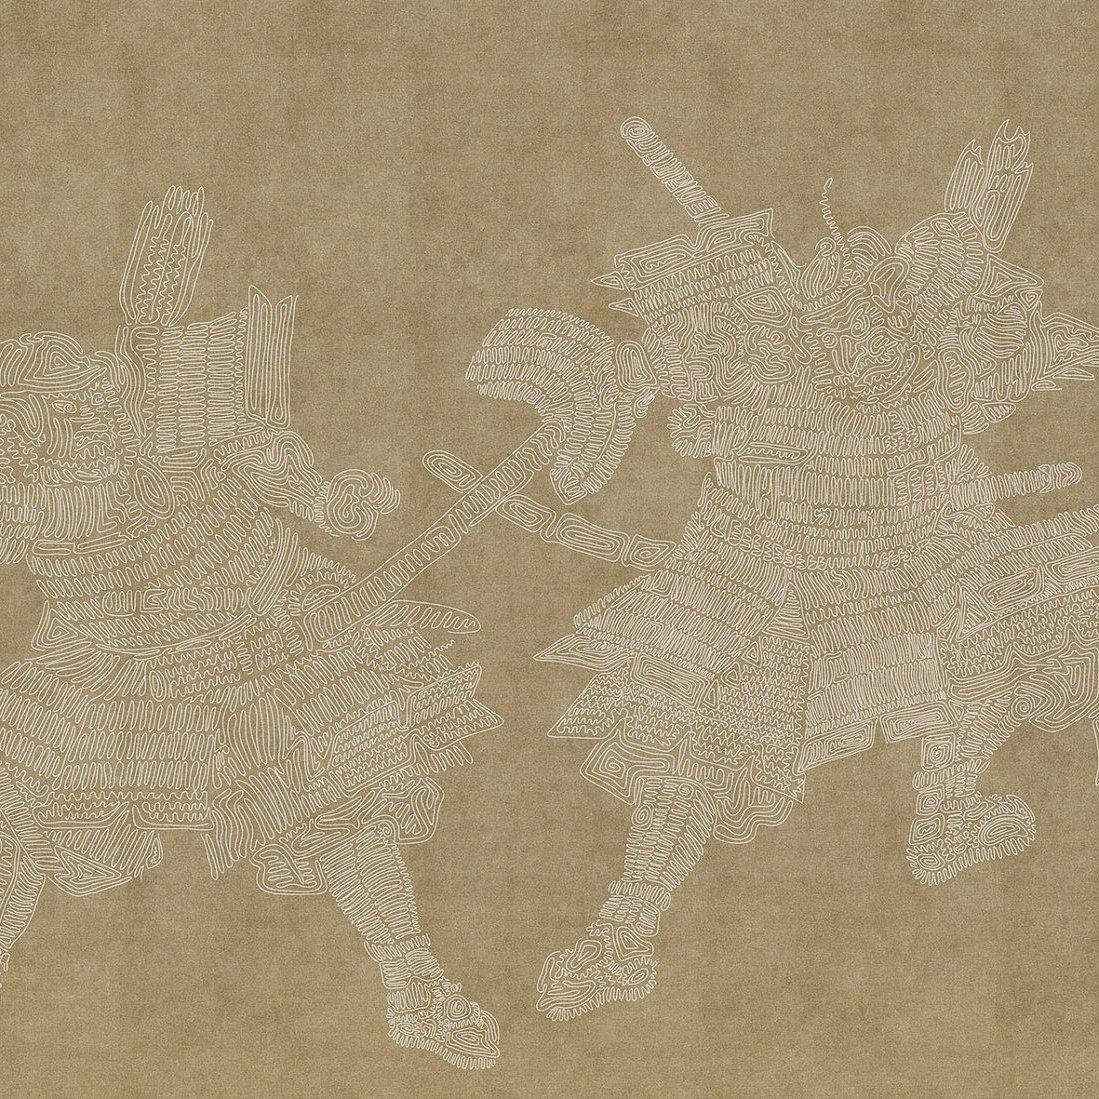 Tangles Two-Digital Wallpaper-London Art-Brown-15131-01